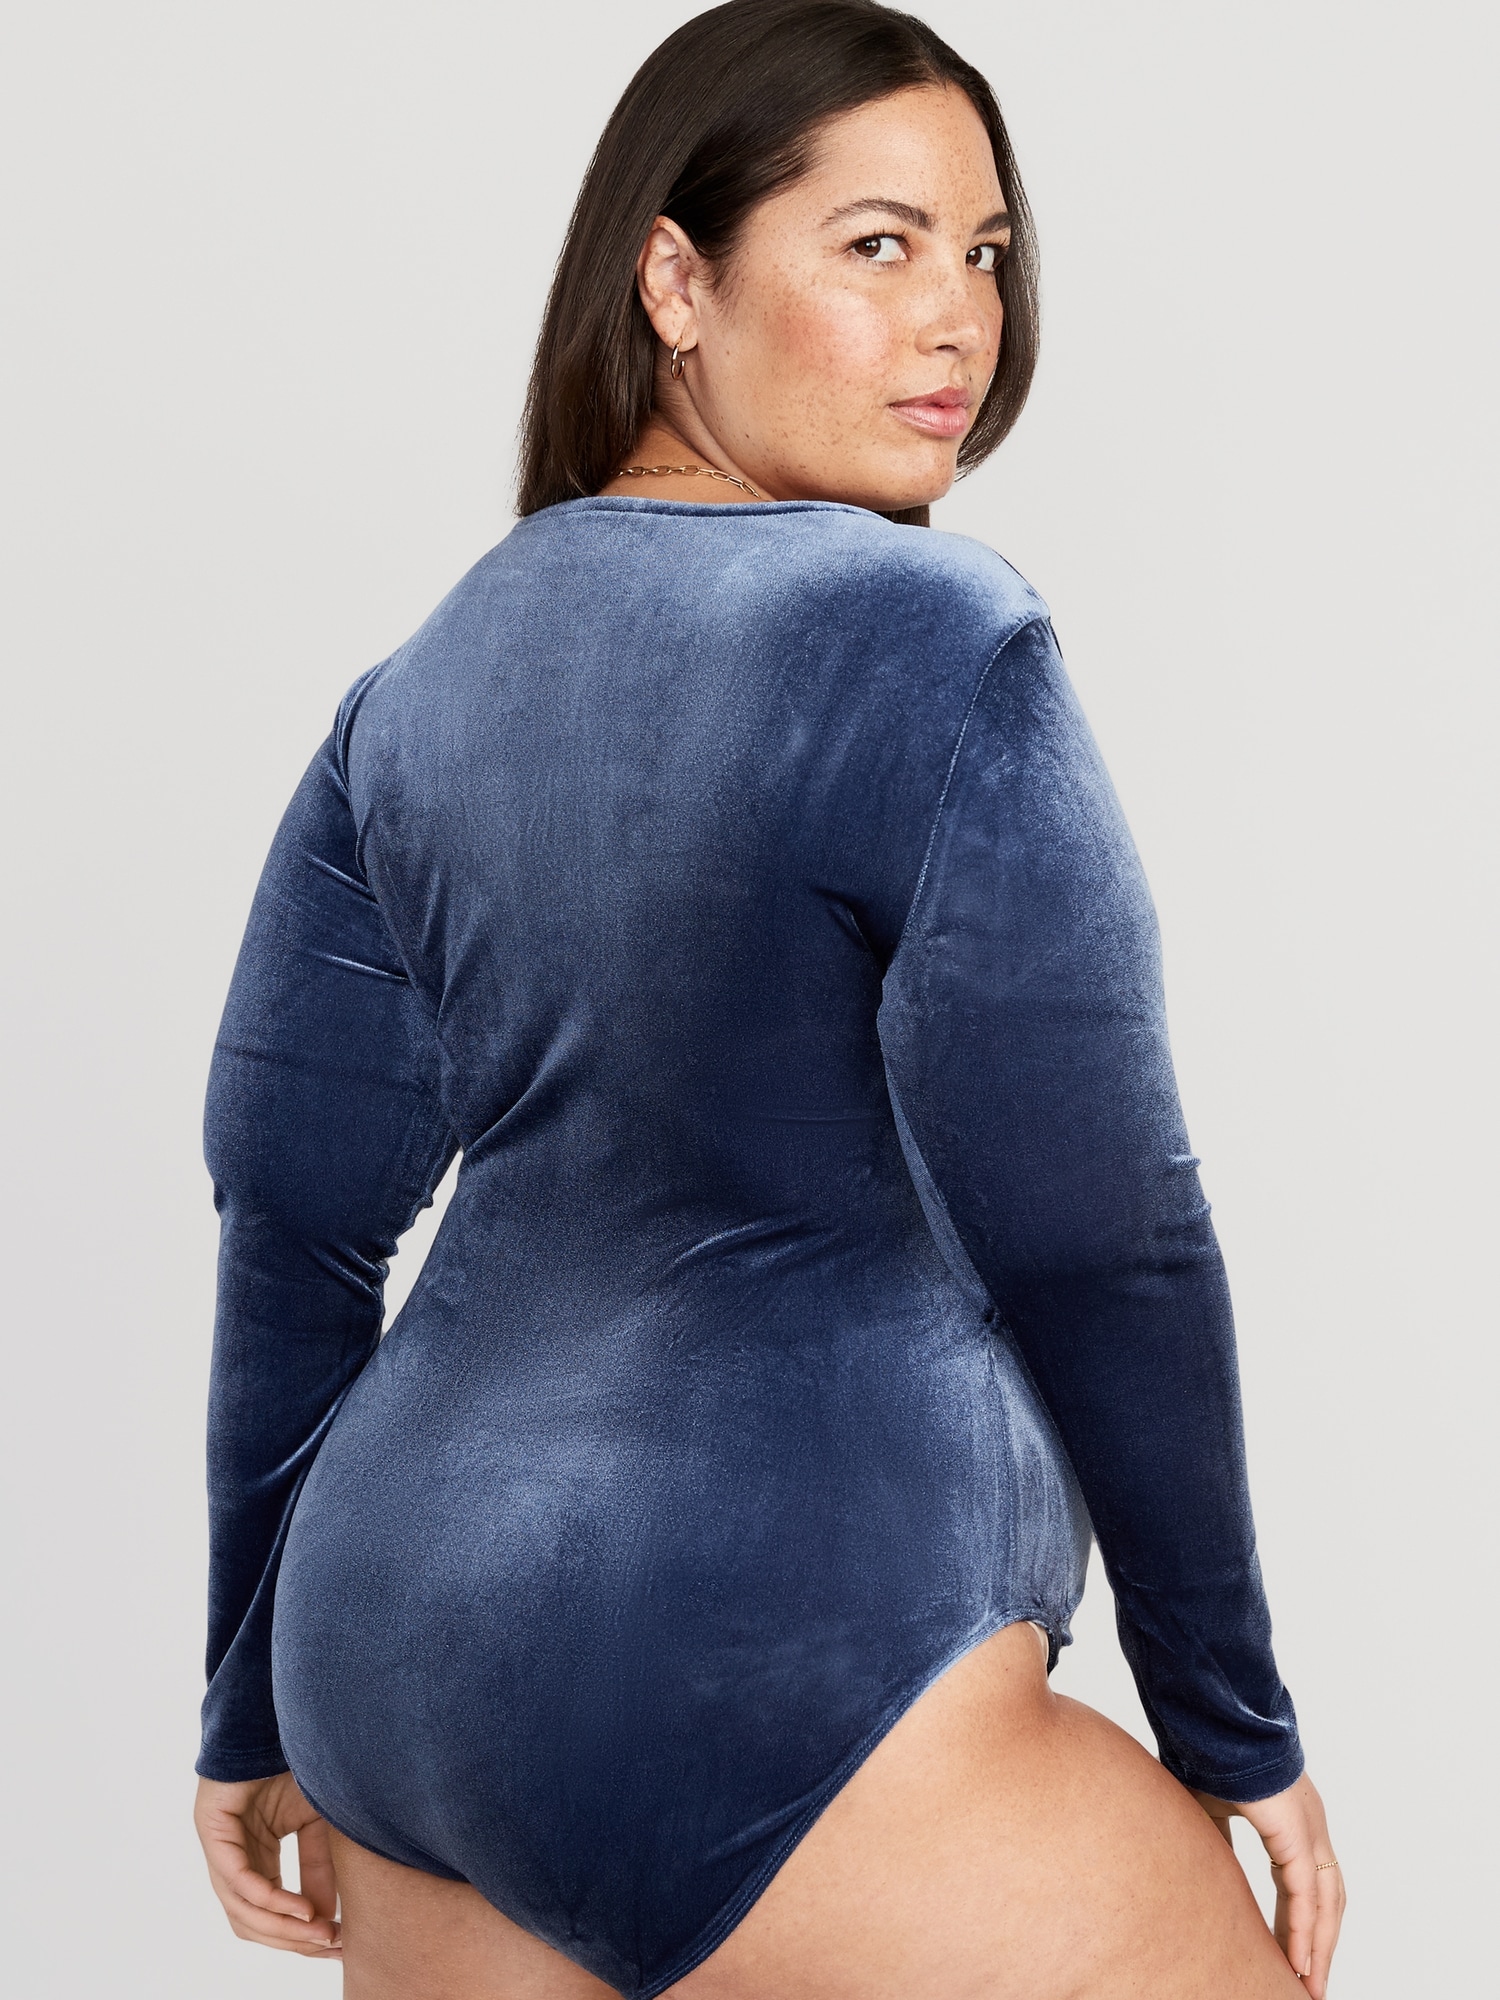 SABRINA Navy Blue Velvet Bodysuit. Blue Velvet Top. Long Sleeve Bodysuit.  Women's Bodysuit. Navy Leotard. 